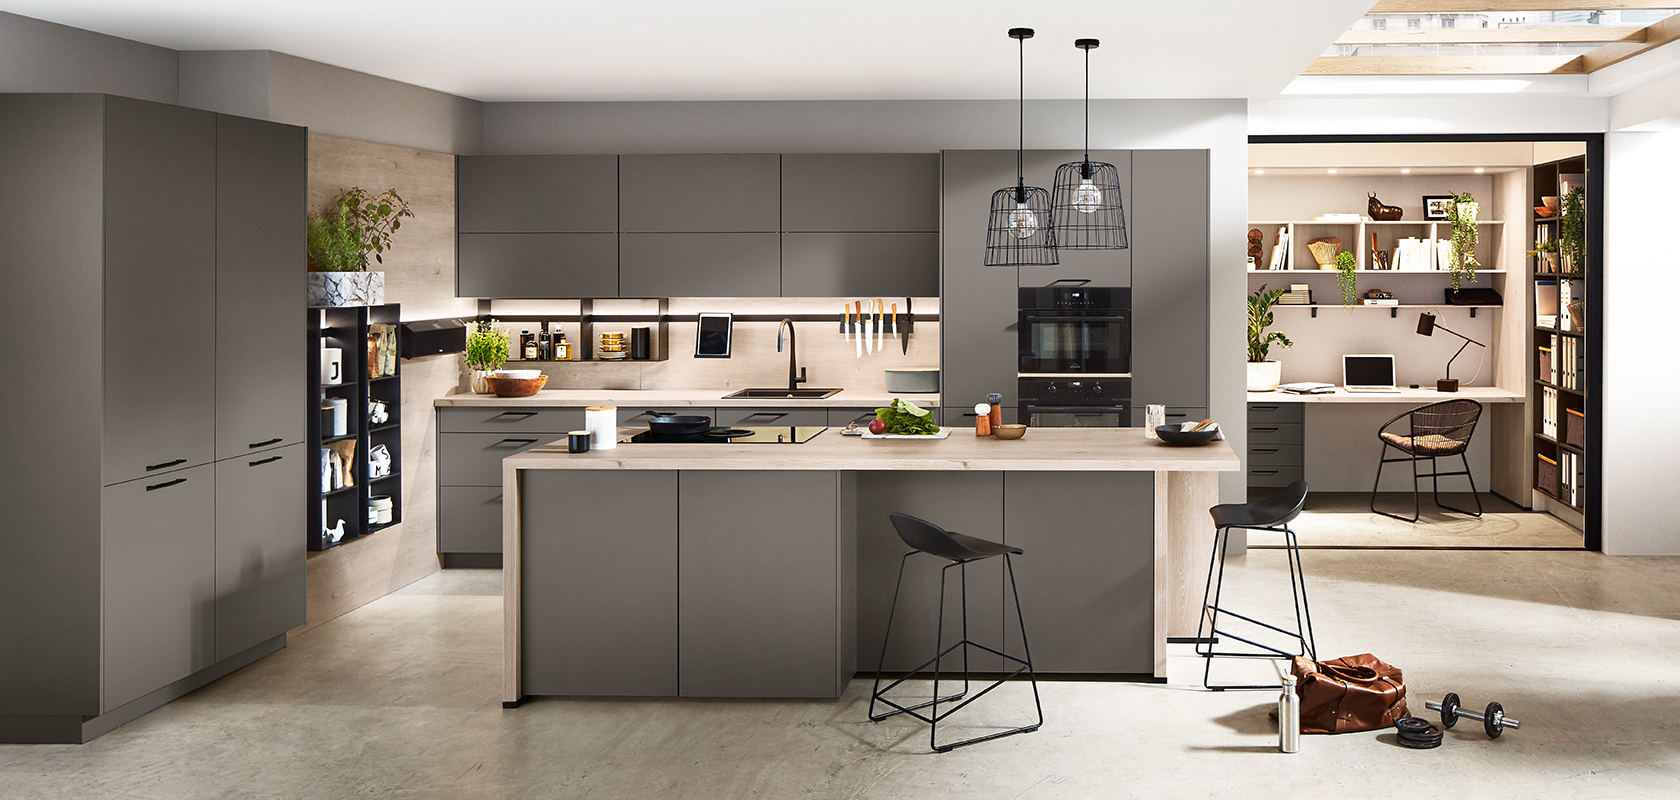 Moderne Küchengestaltung mit eleganten grauen Schränken, integrierten Geräten und einer geschmackvollen Insel mit Barhockern, die nahtlos in eine gemütliche Home-Office-Ecke übergeht.